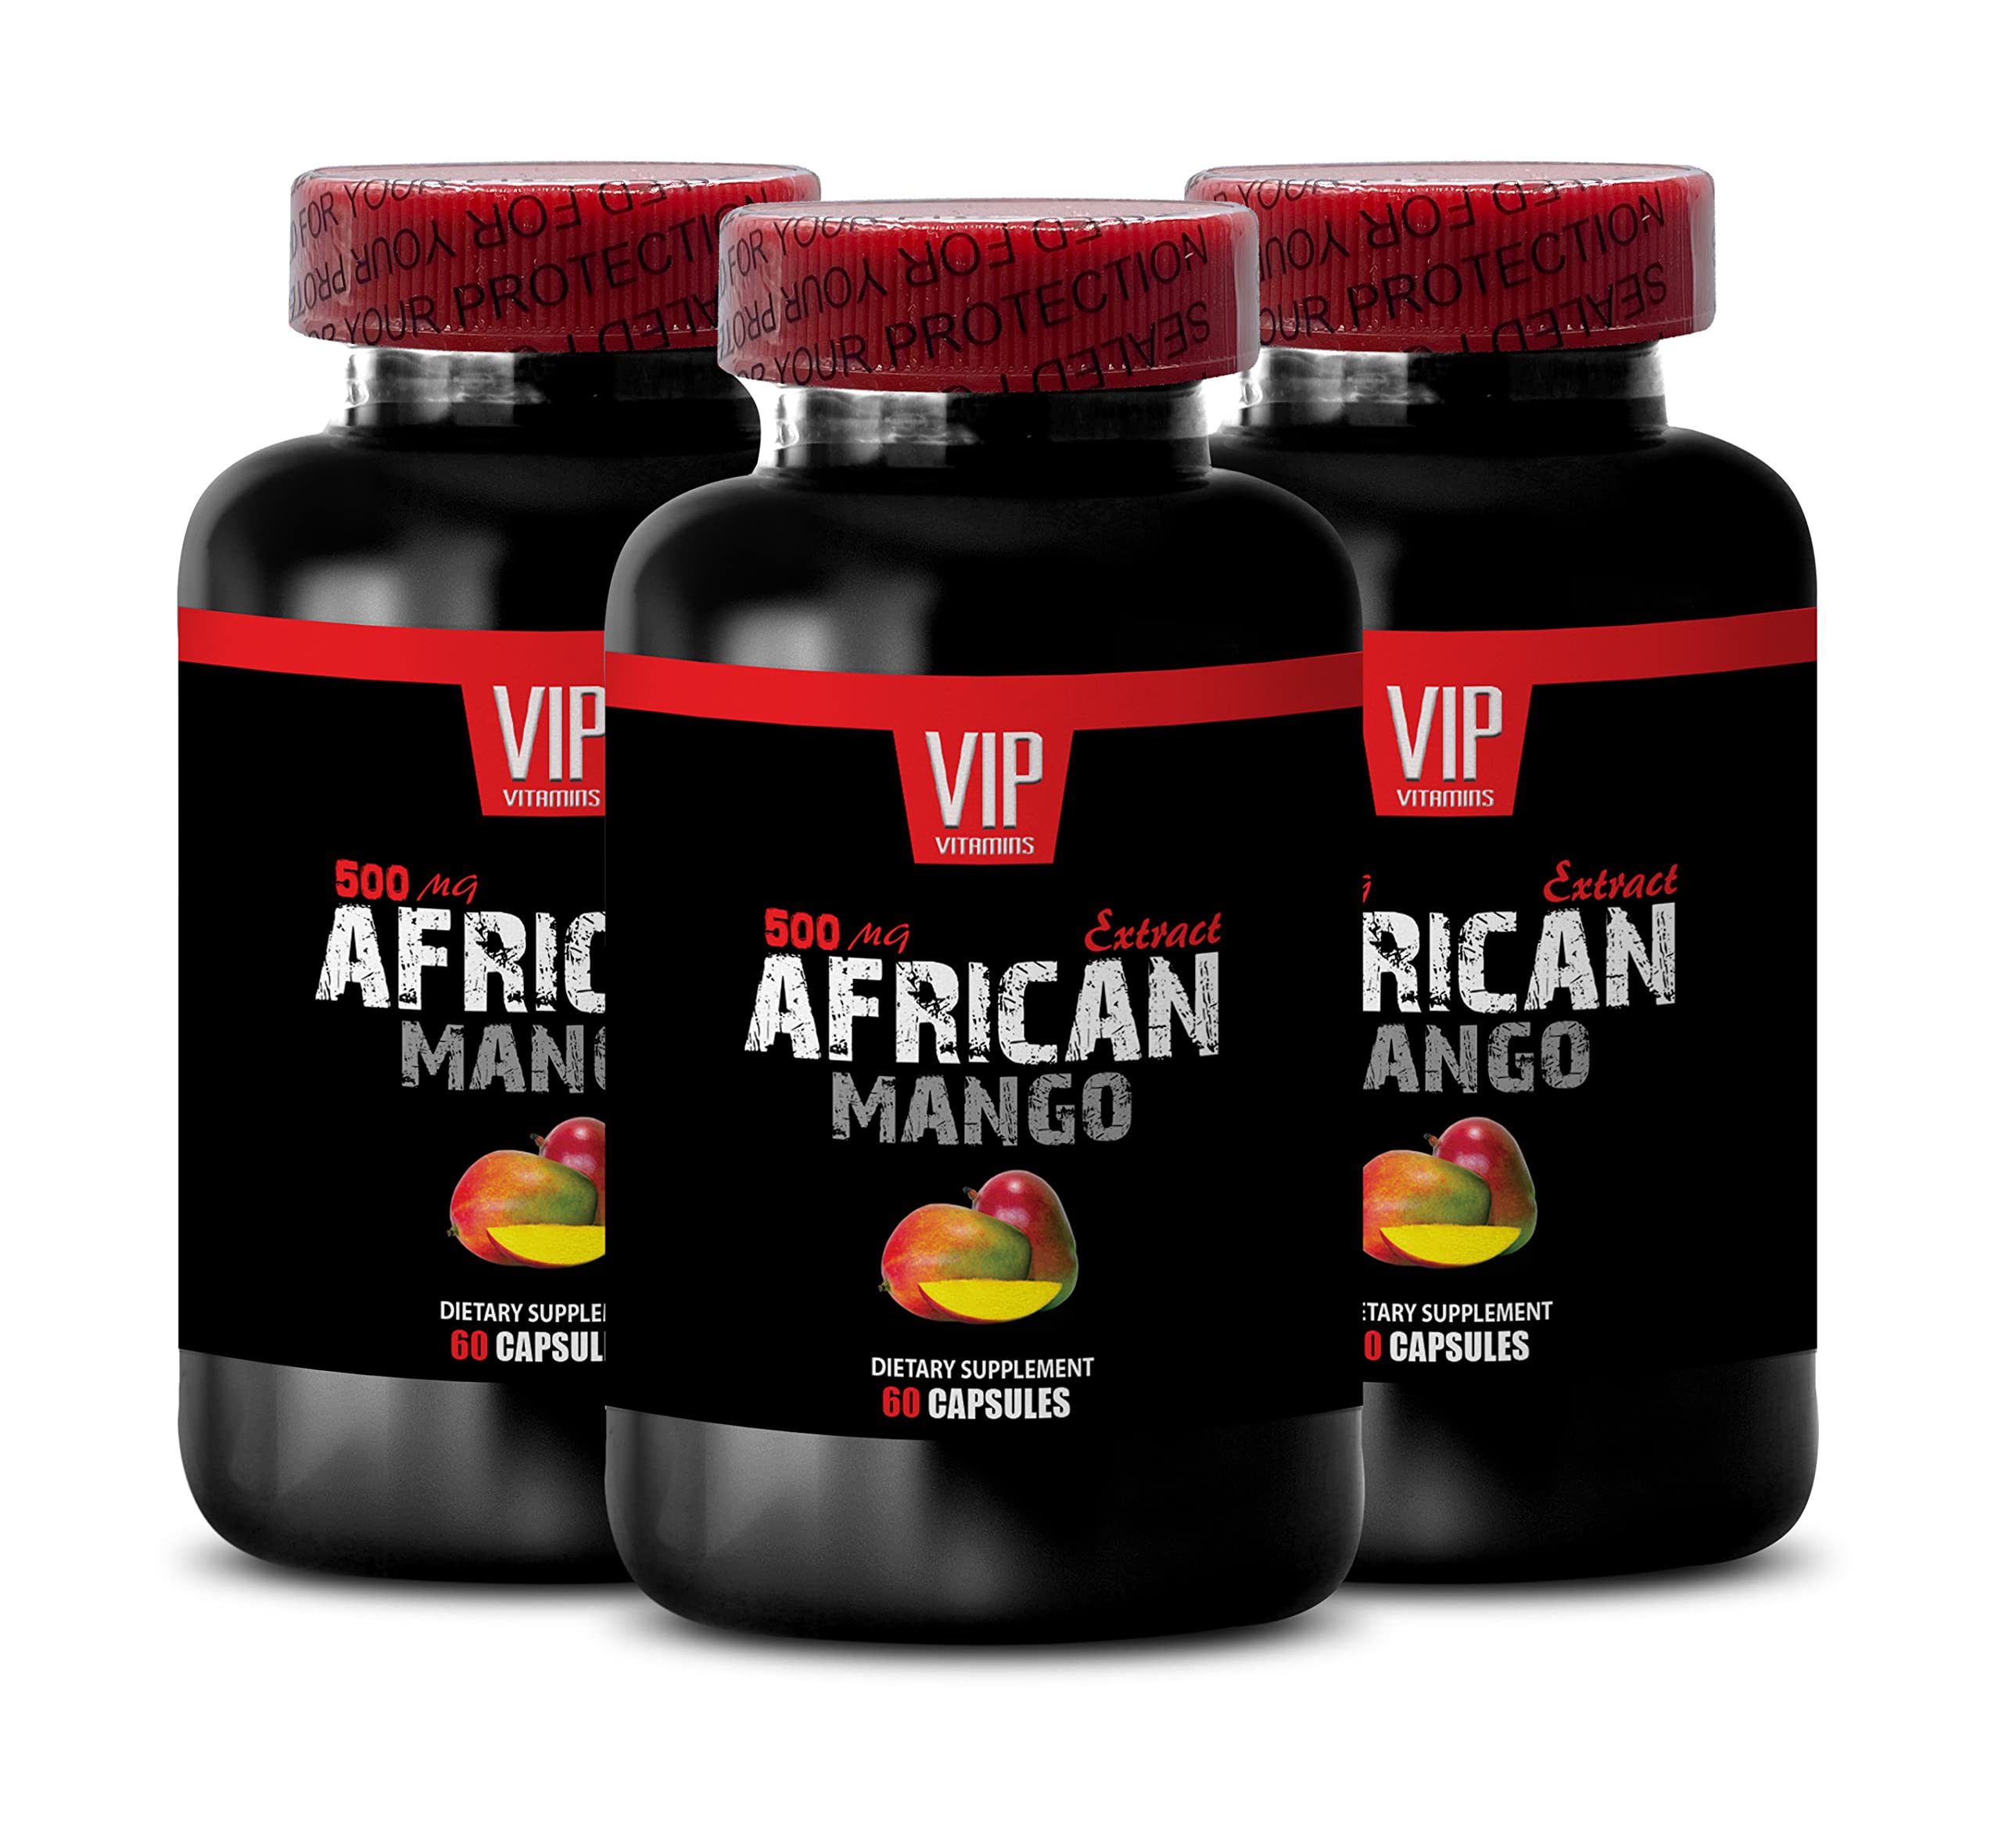 African Mango Diet Pills- African Mango 1000mg - African Mango Weight Loss (3 Bottles 180 Capsules)